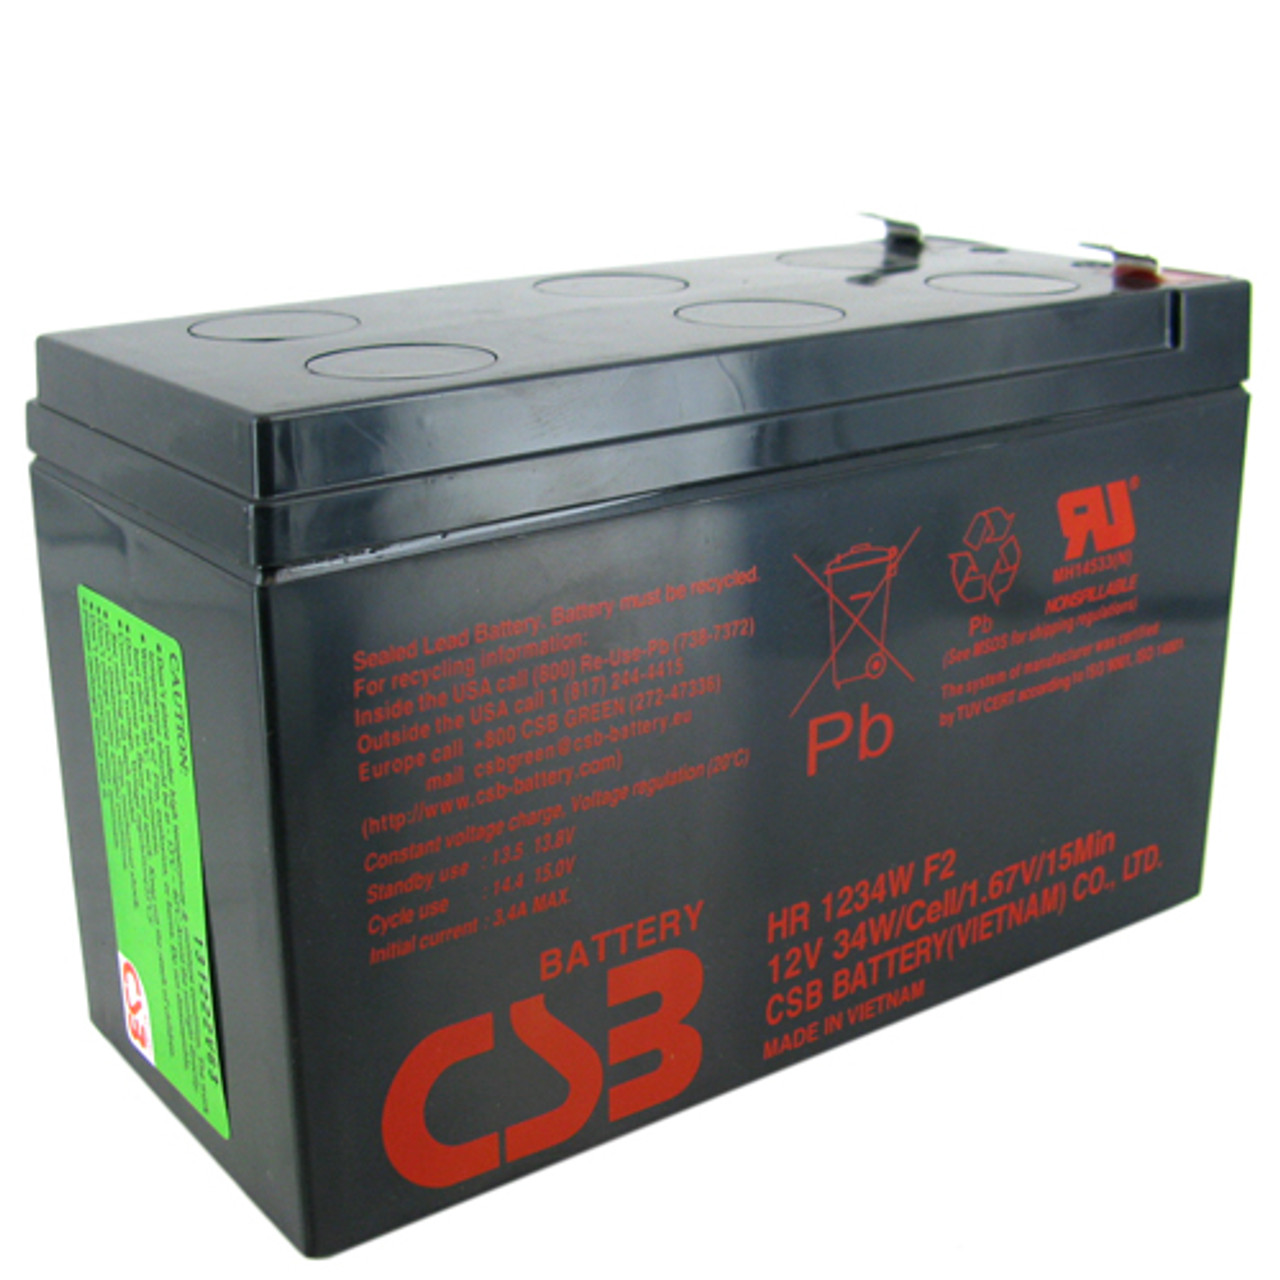 Аккумулятор csb hr1234w. CSB HR 1234w f2. Батарея CSB HR 1234w f2. Аккумулятор CSB hr1234w f2 (12v,9ah) для ups.